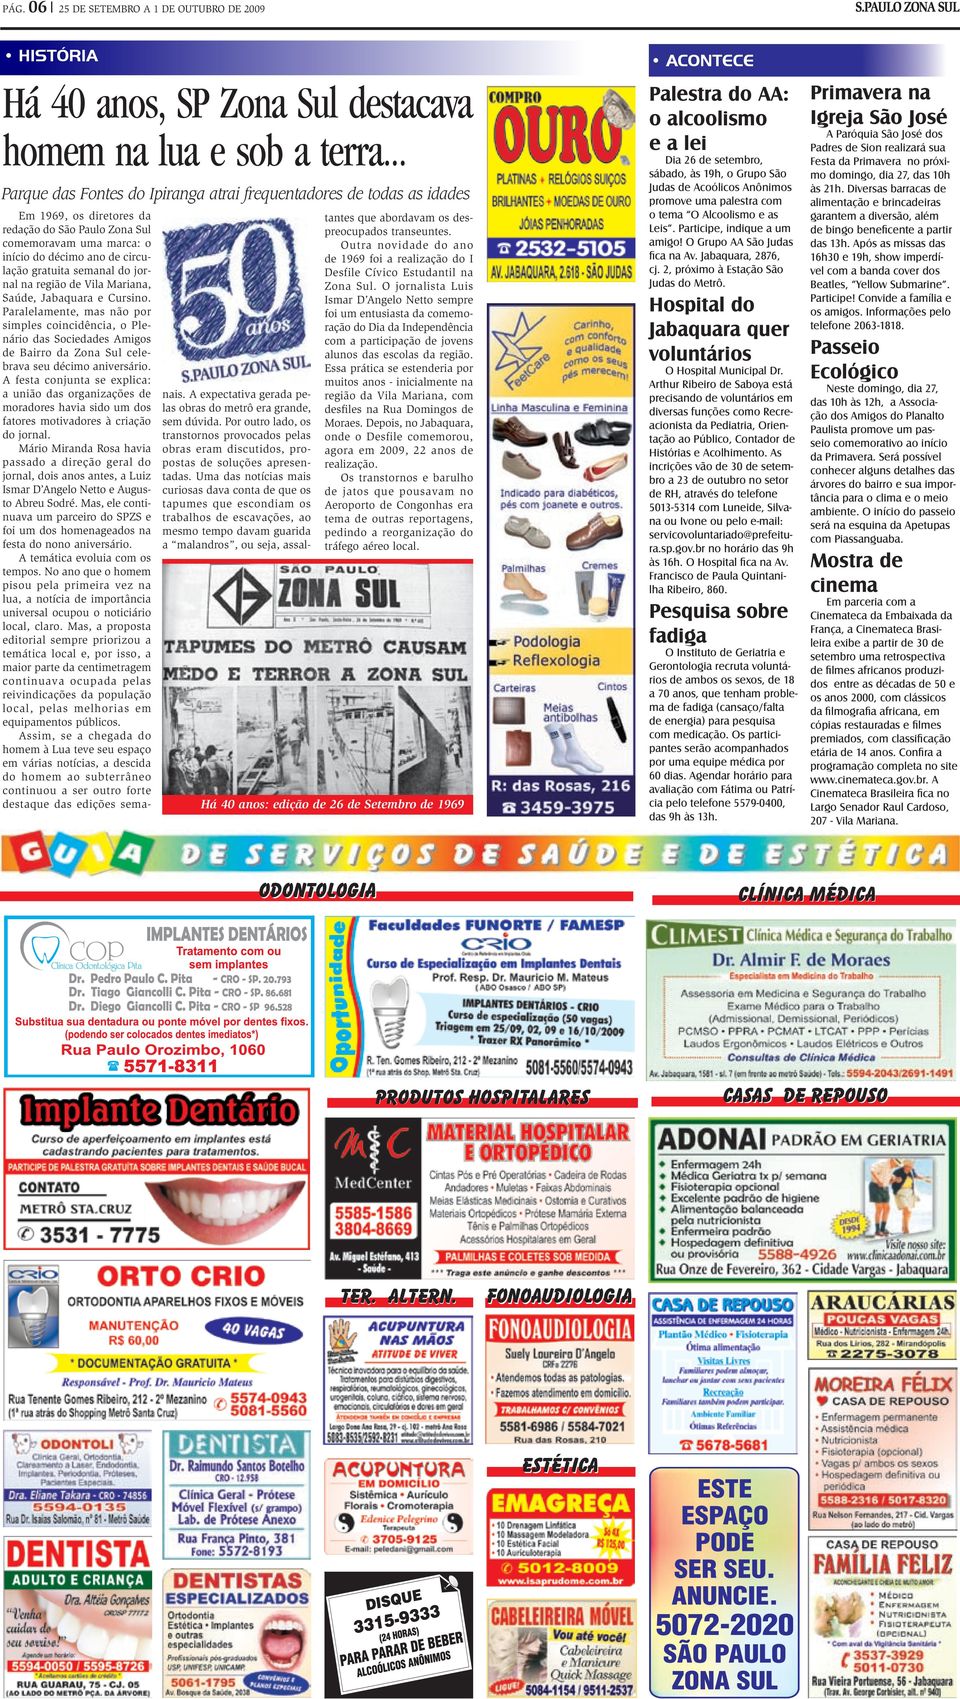 semanal do jornal na região de Vila Mariana, Saúde, Jabaquara e Cursino.